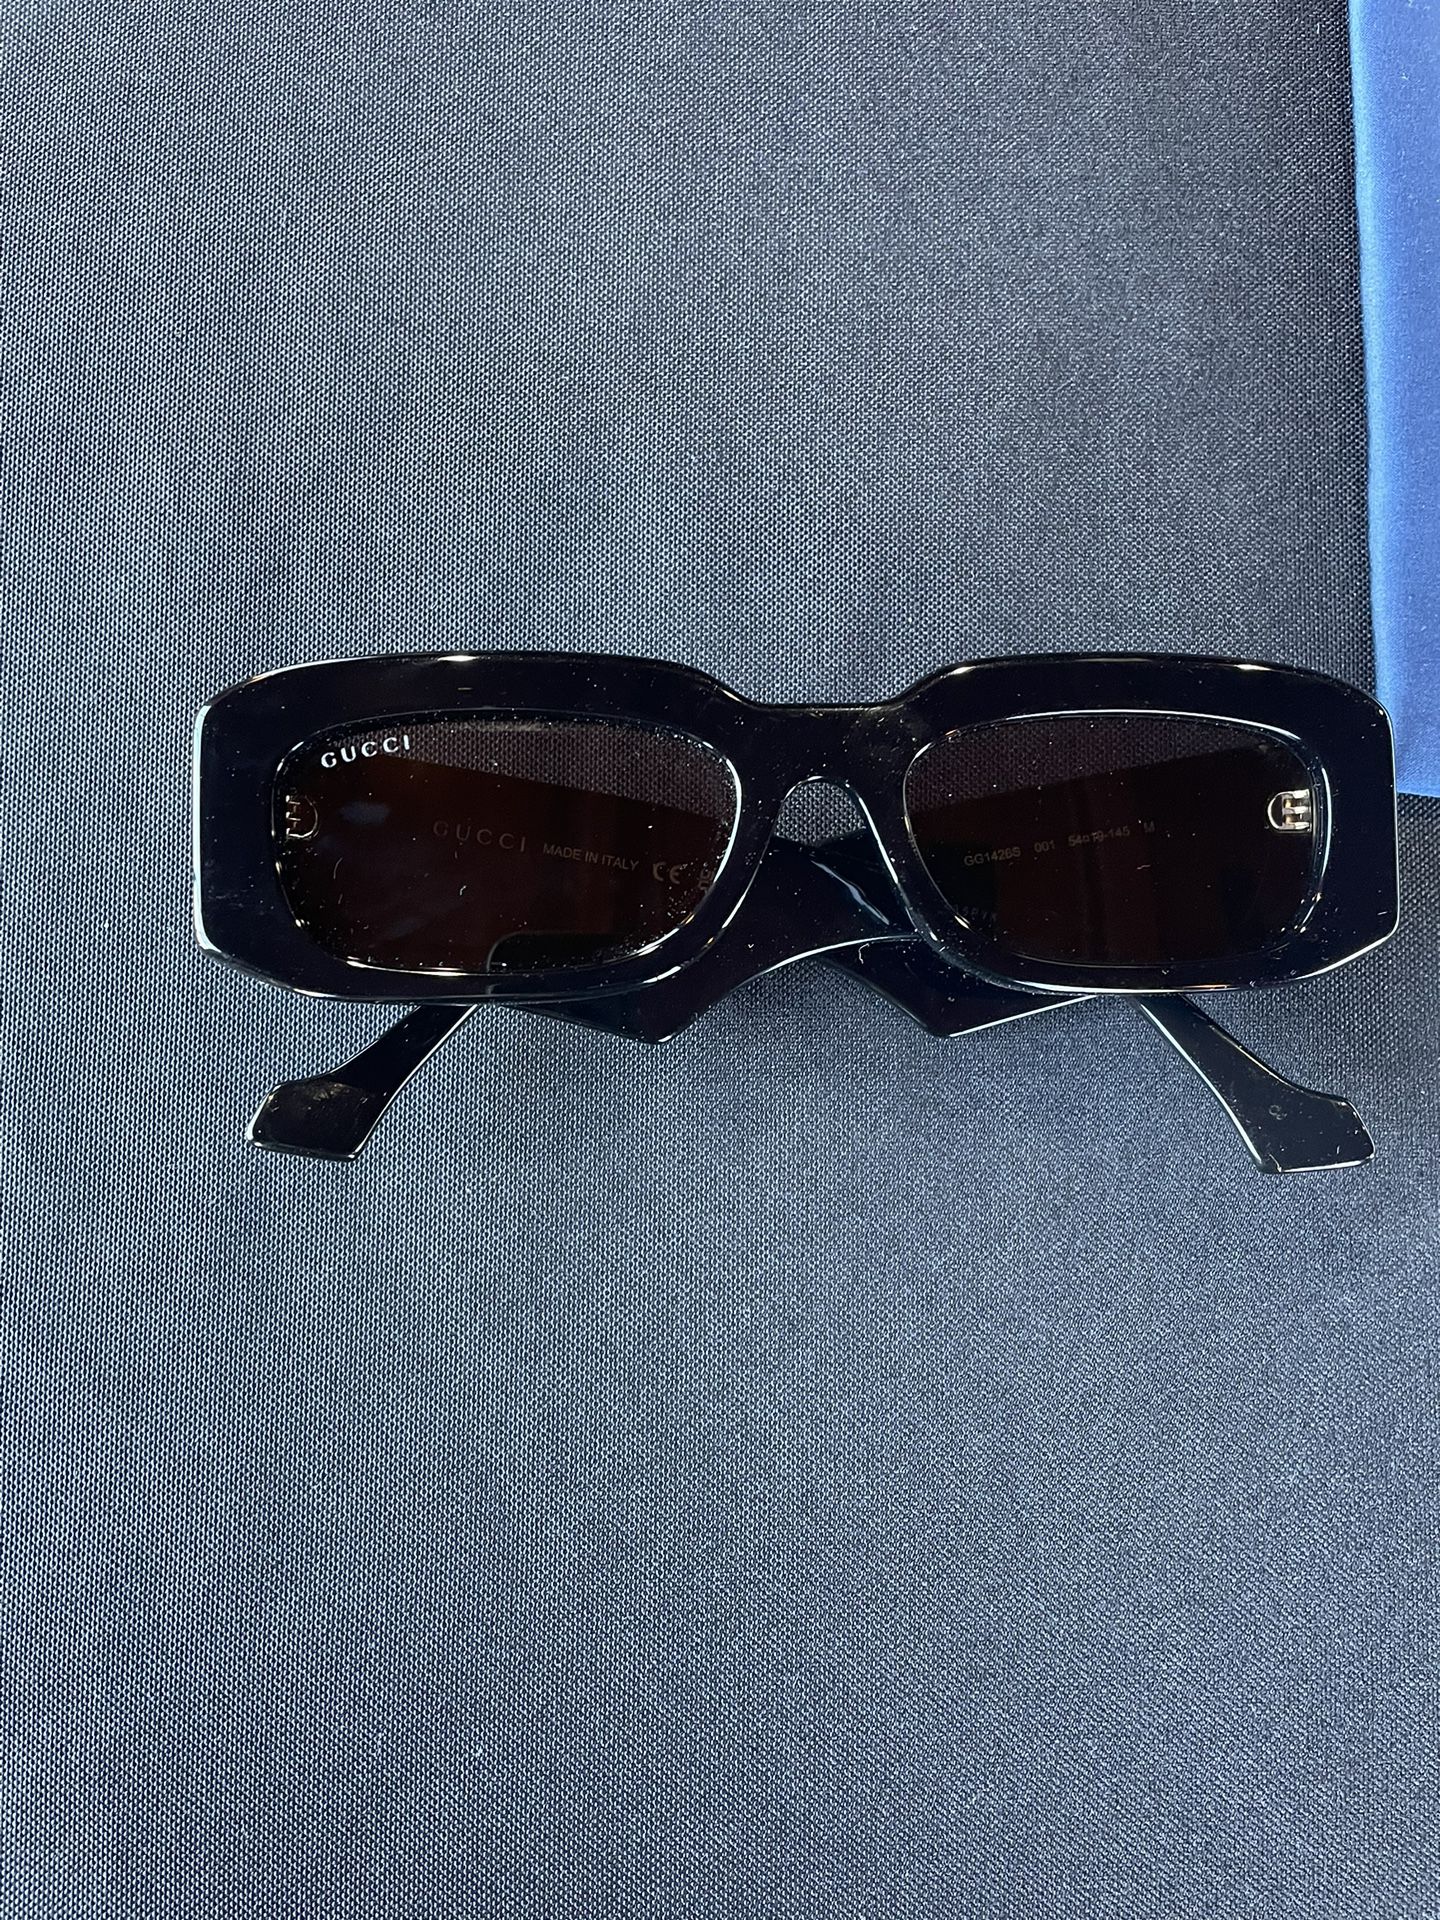 Gucci sunglasses W/Receipt 